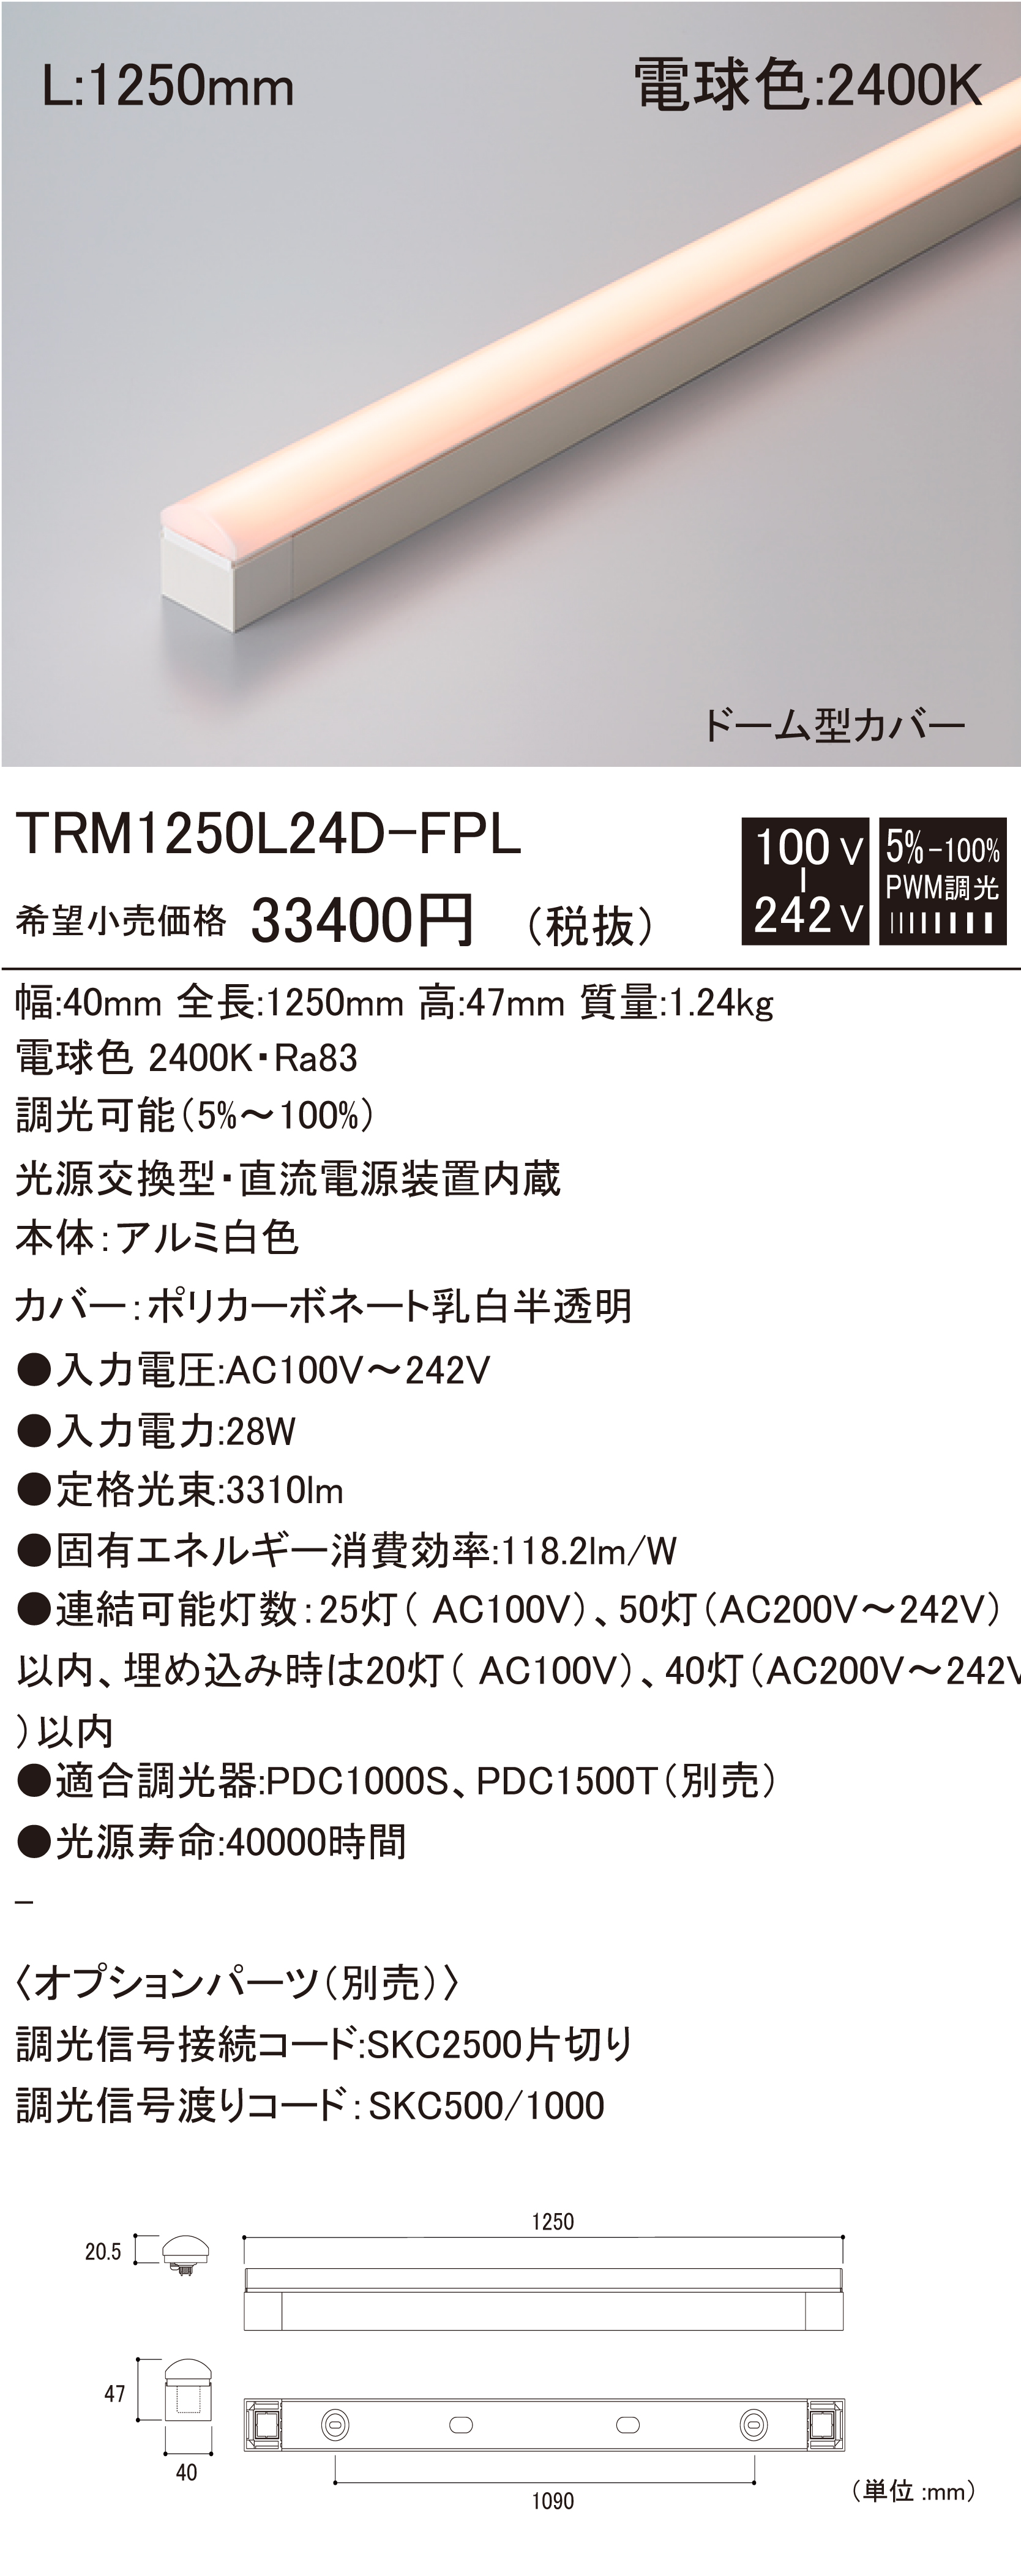 TRM D-FPL 建築化照明 ダウンロード | DNライティング株式会社